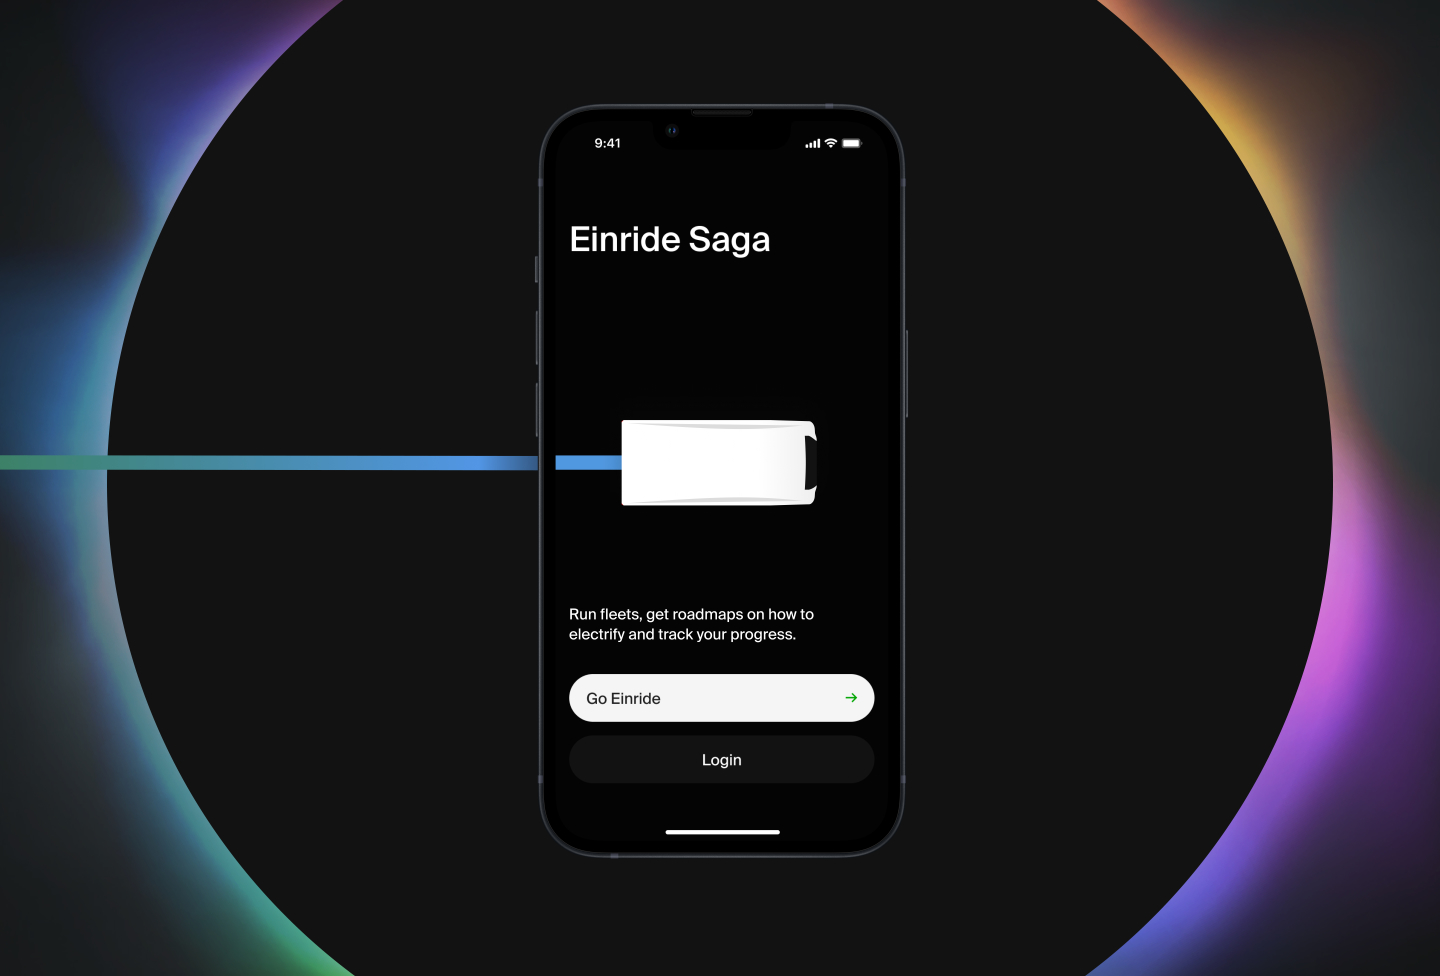 Einride Saga app running on a phone.